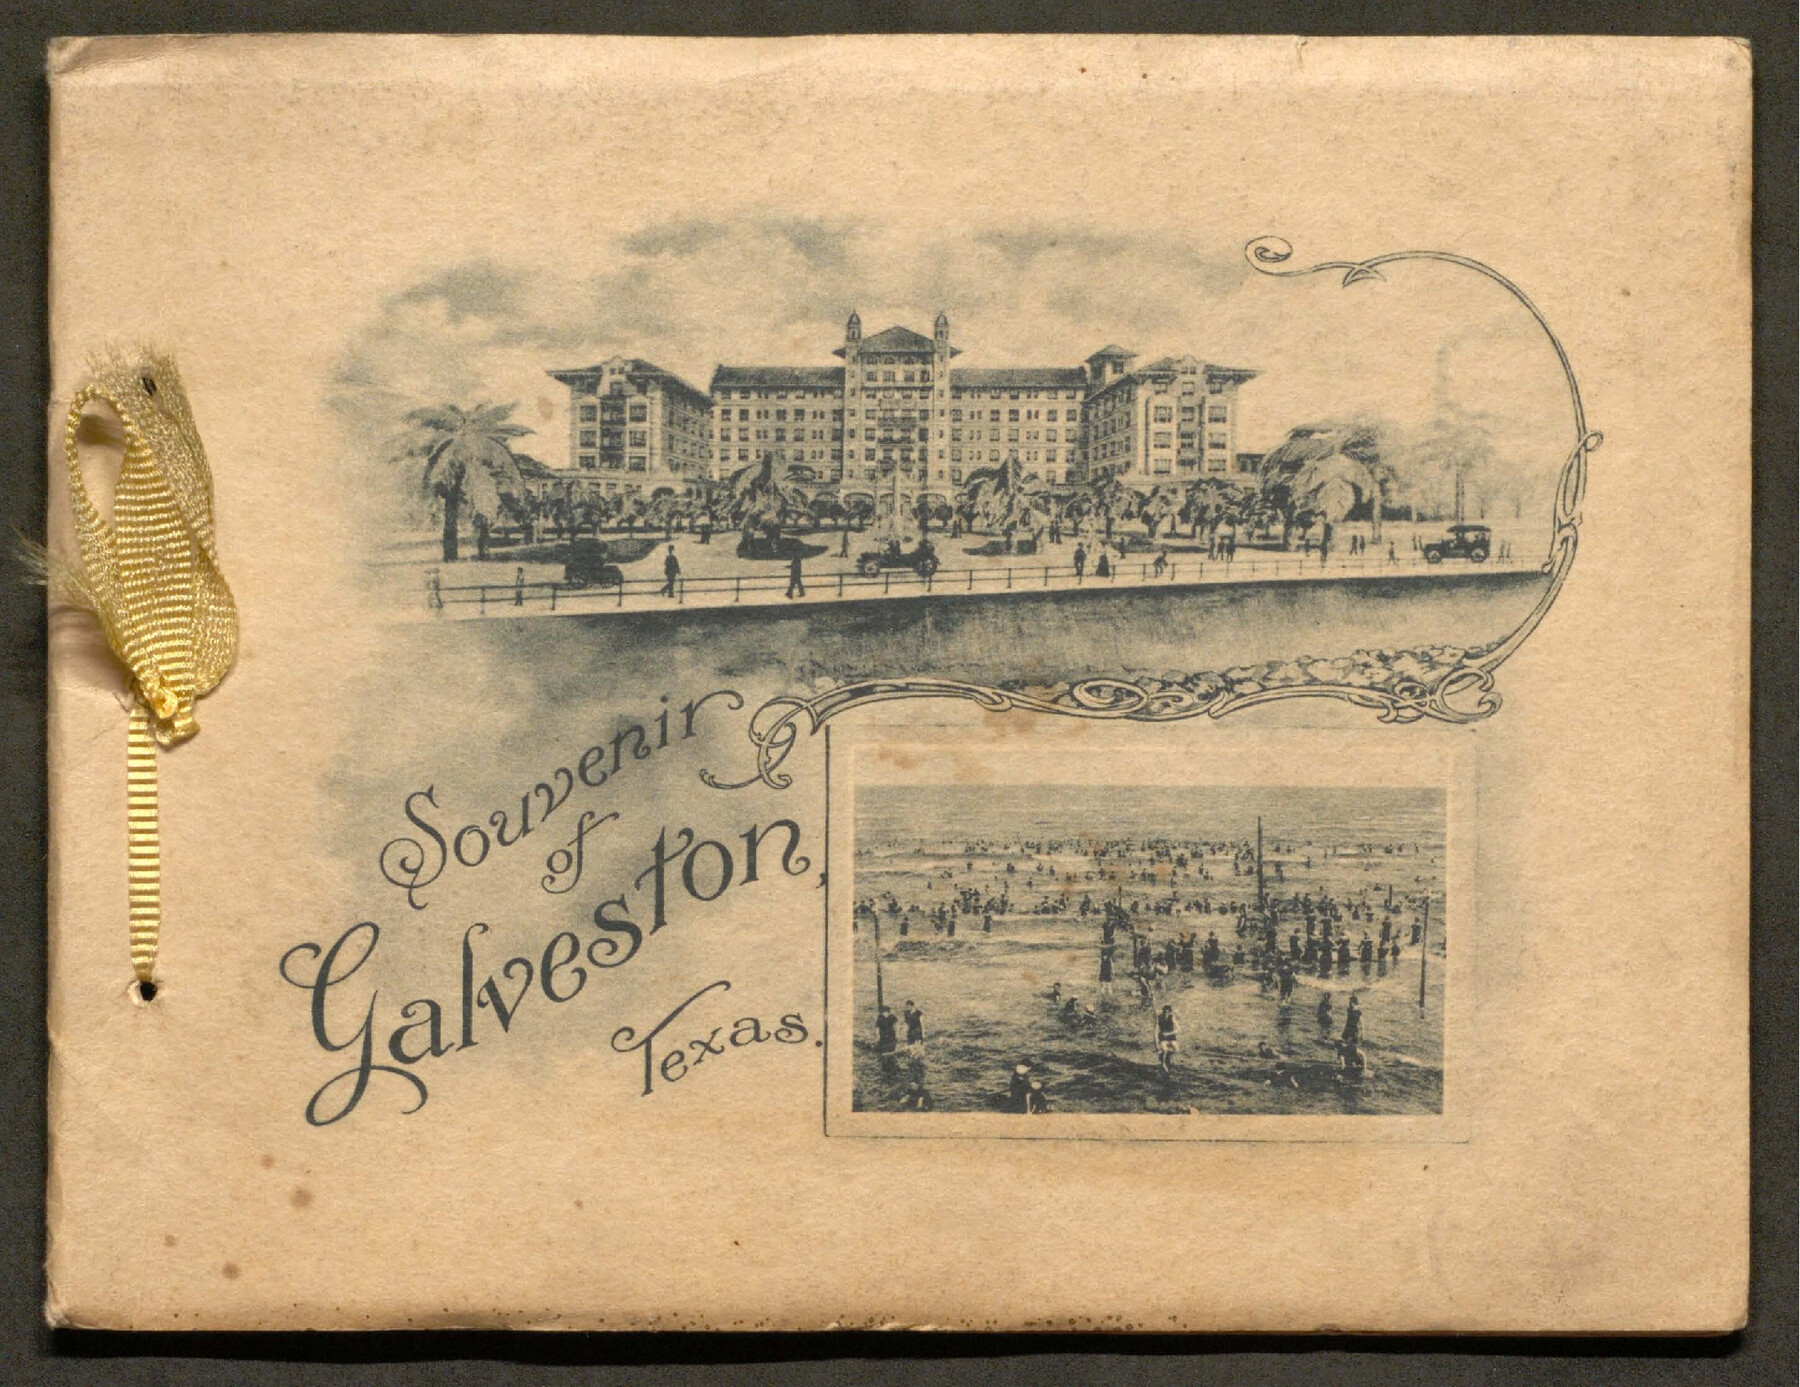 97055, Souvenir of Galveston, Texas